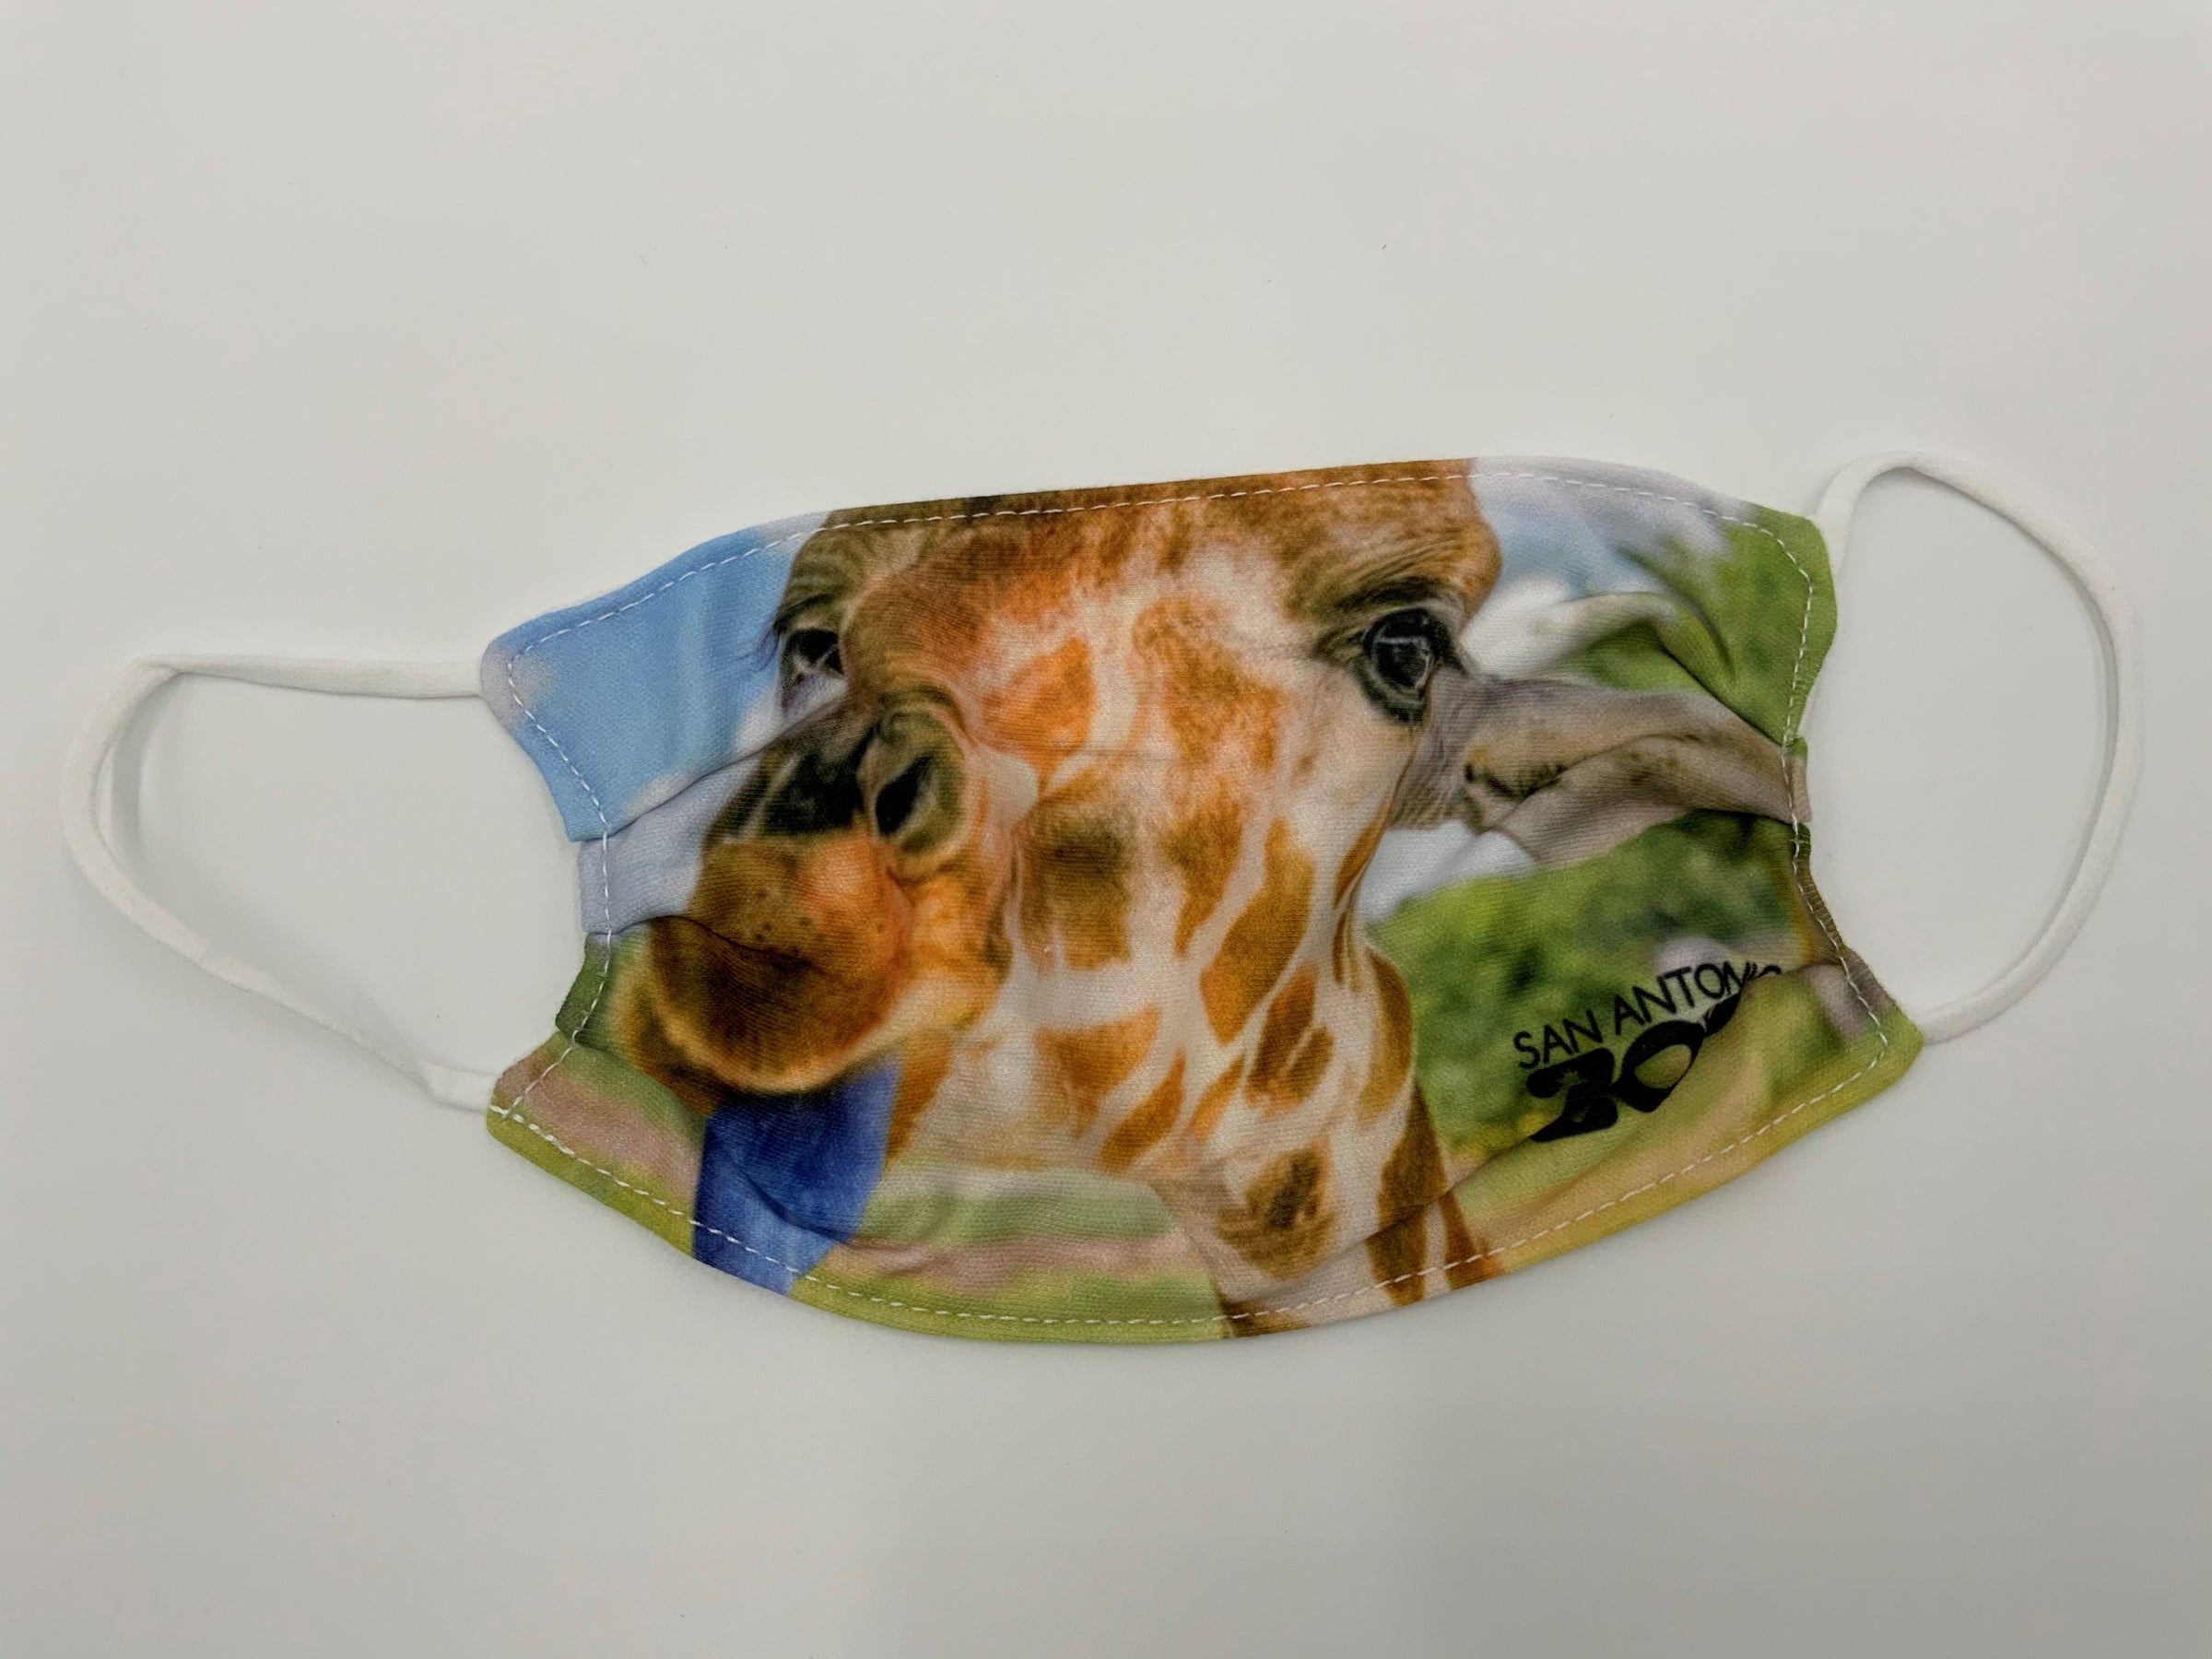 giraffe head mask